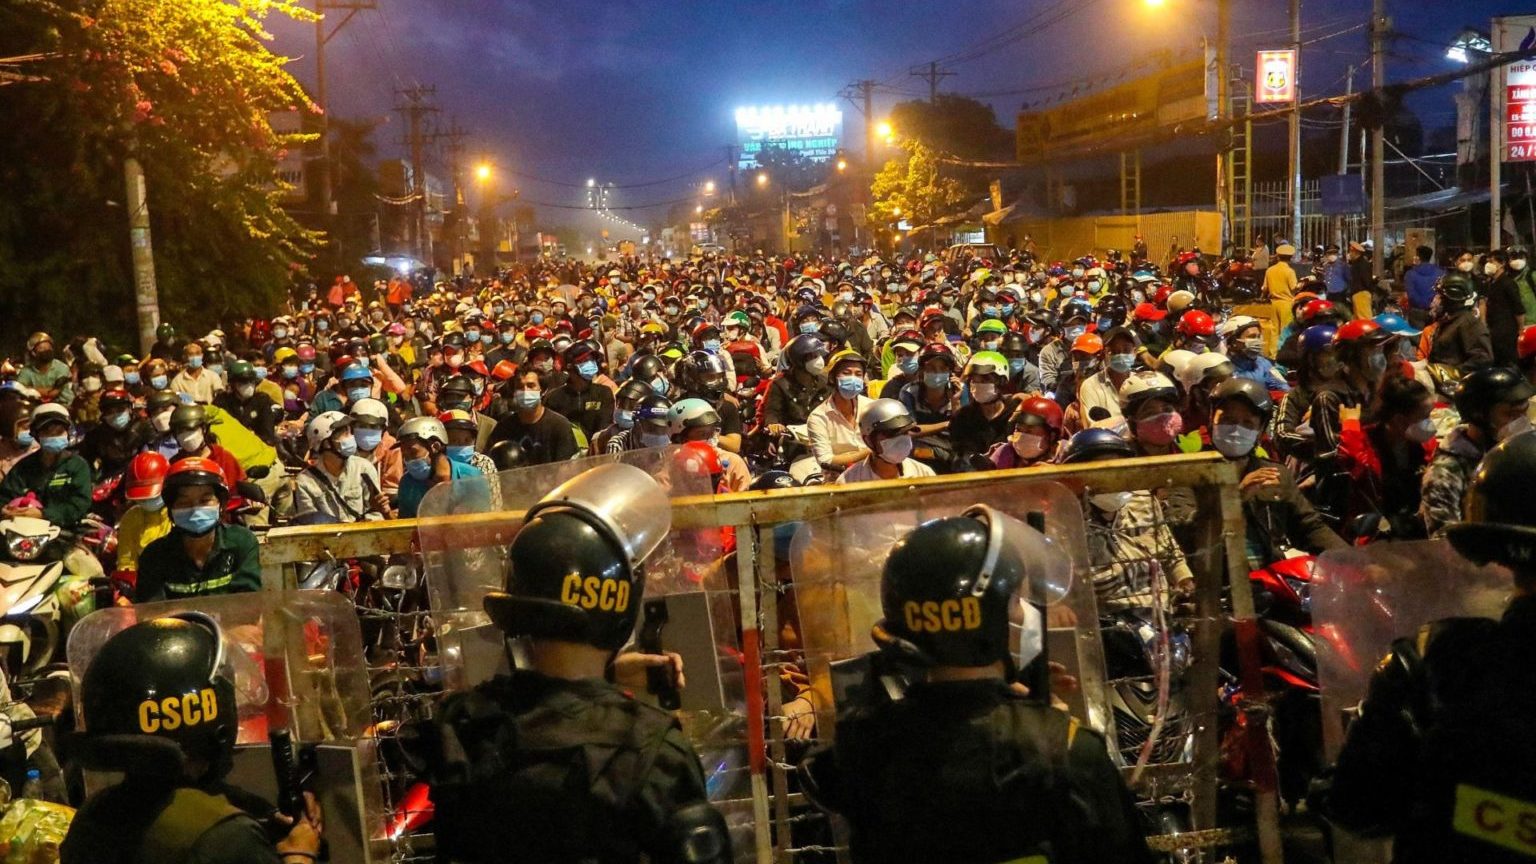 Dân "nhập cư" chờ tại một chốt chặn để bỏ Sài Gòn về quê khi lệnh phong tỏa về các quy định nghiêm ngặt do Covid-19 được áp dụng trong ba tháng qua bị hủy bỏ hôm 1/10/2021. Ảnh: Chi Pi/ AFP via Getty Images